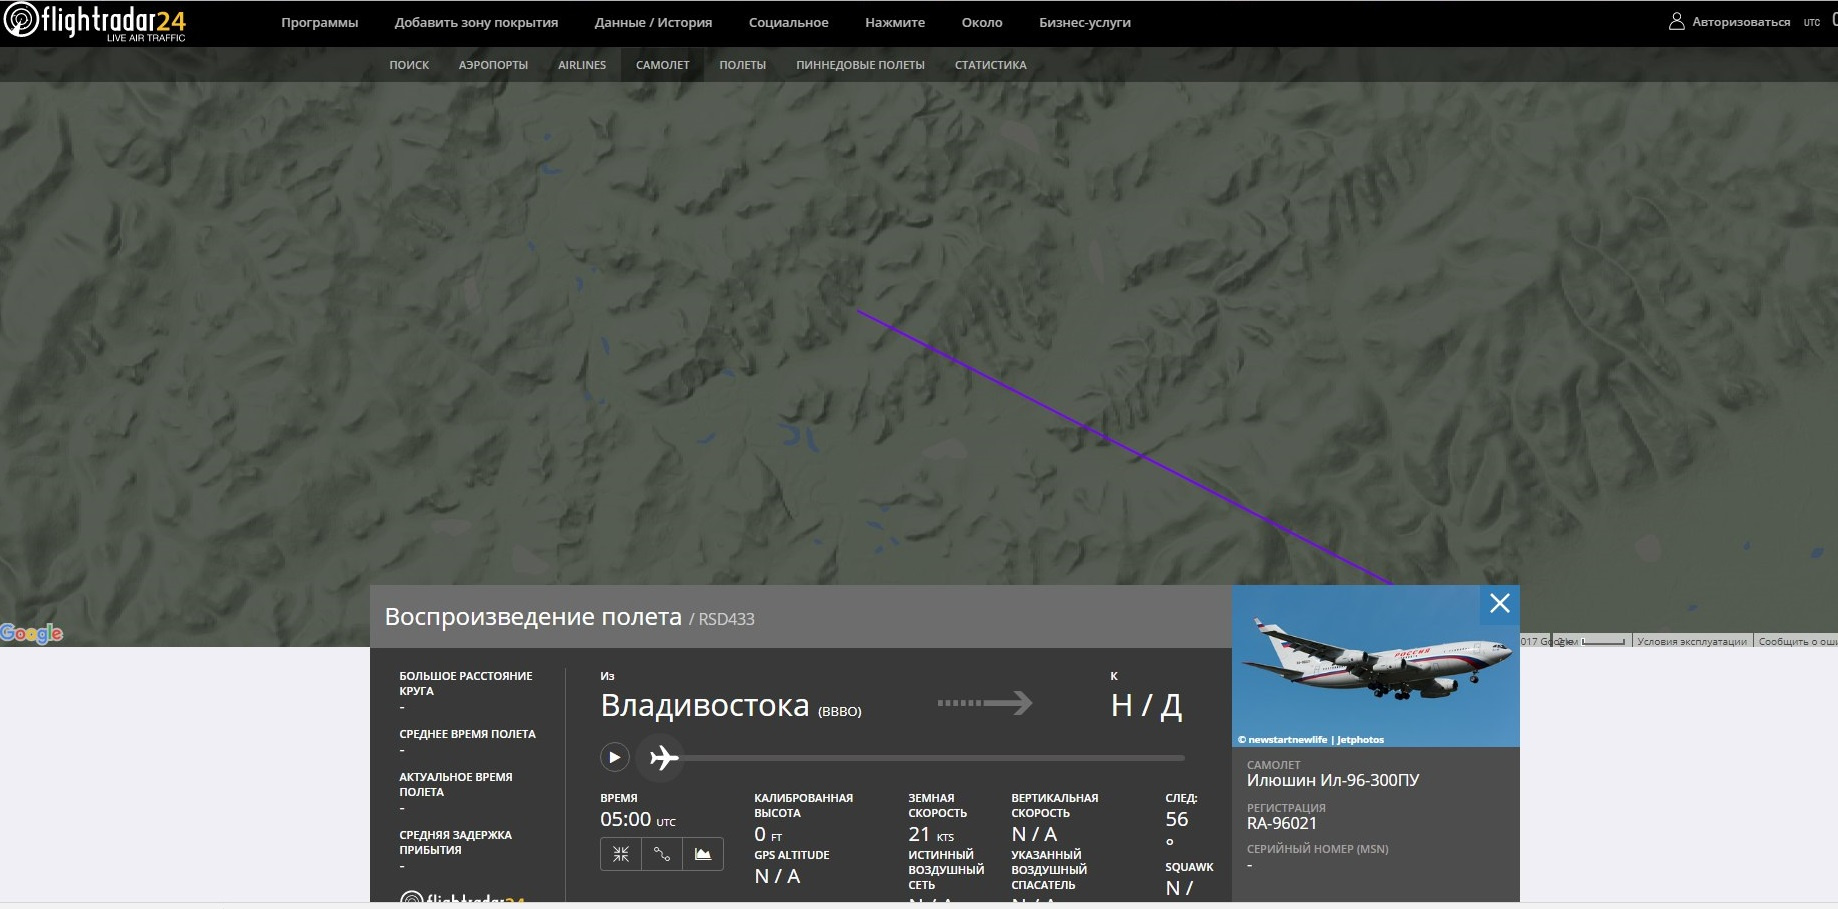 Самолет по сайту flightradar24 отследить сейчас нельзя